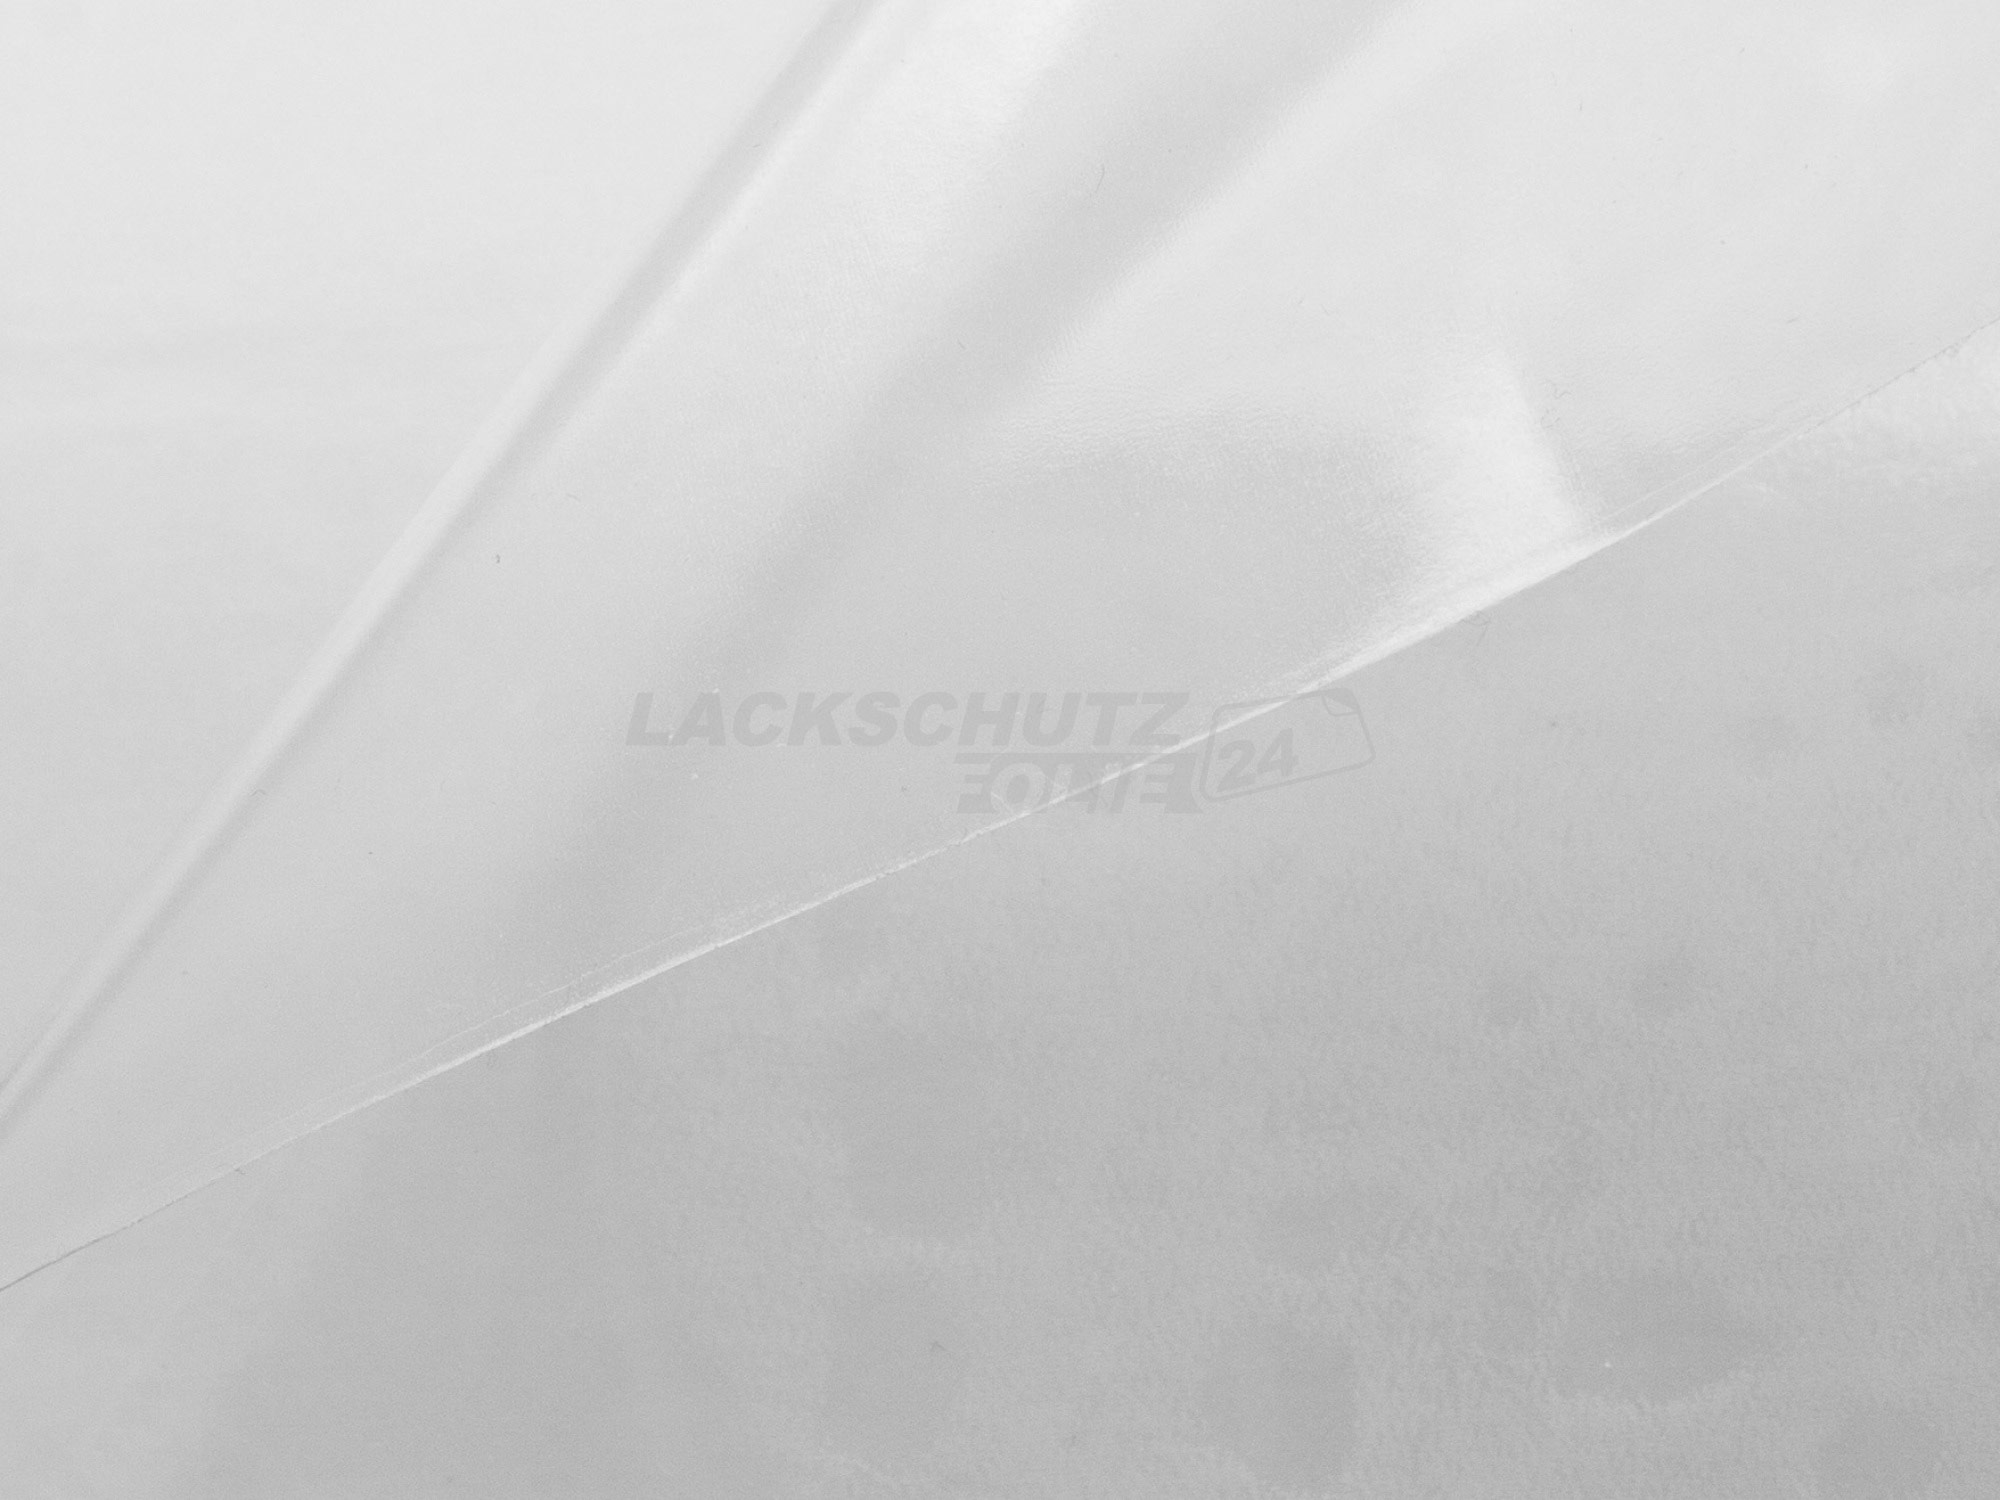 Ladekantenschutzfolie - Transparent Glatt Hochglänzend für VW / Volkswagen Passat Limousine B6, Typ 3C, BJ 2005-2010